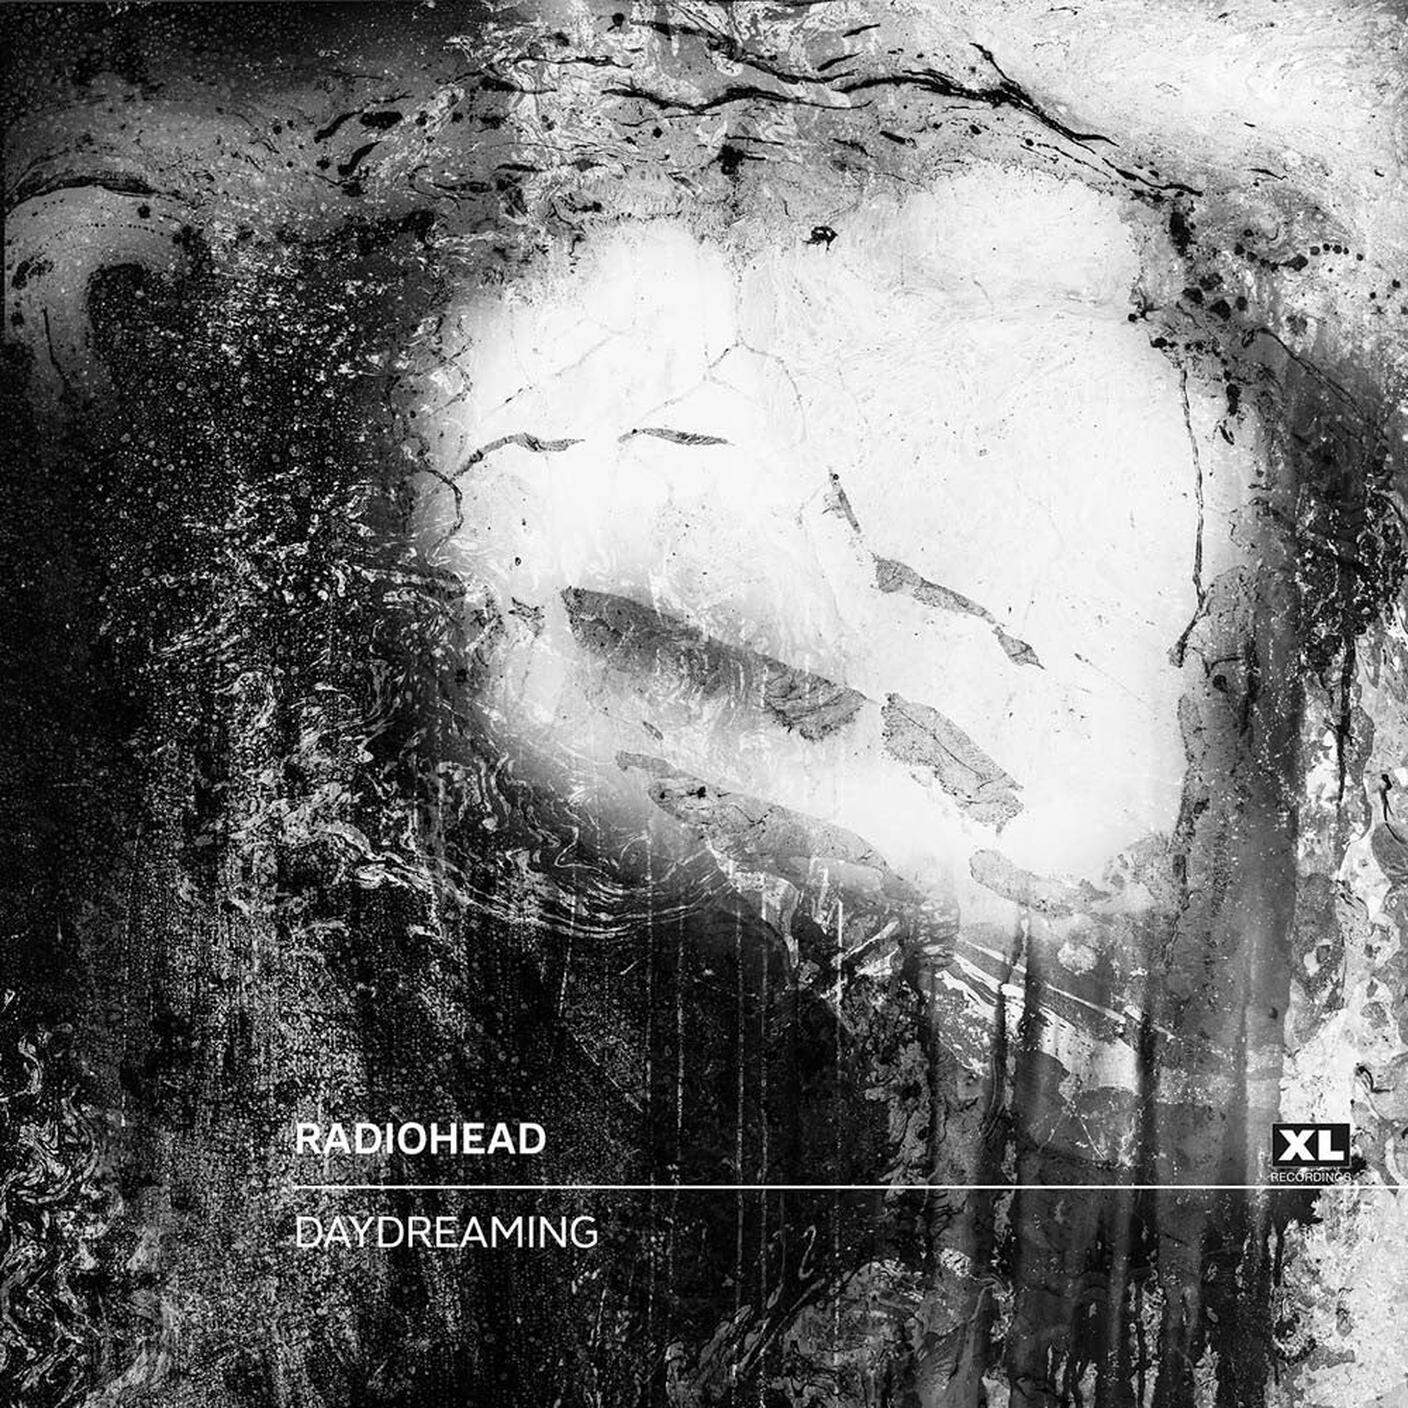 Radiohead; "Daydreaming"; XL Recordings (dettaglio copertina)